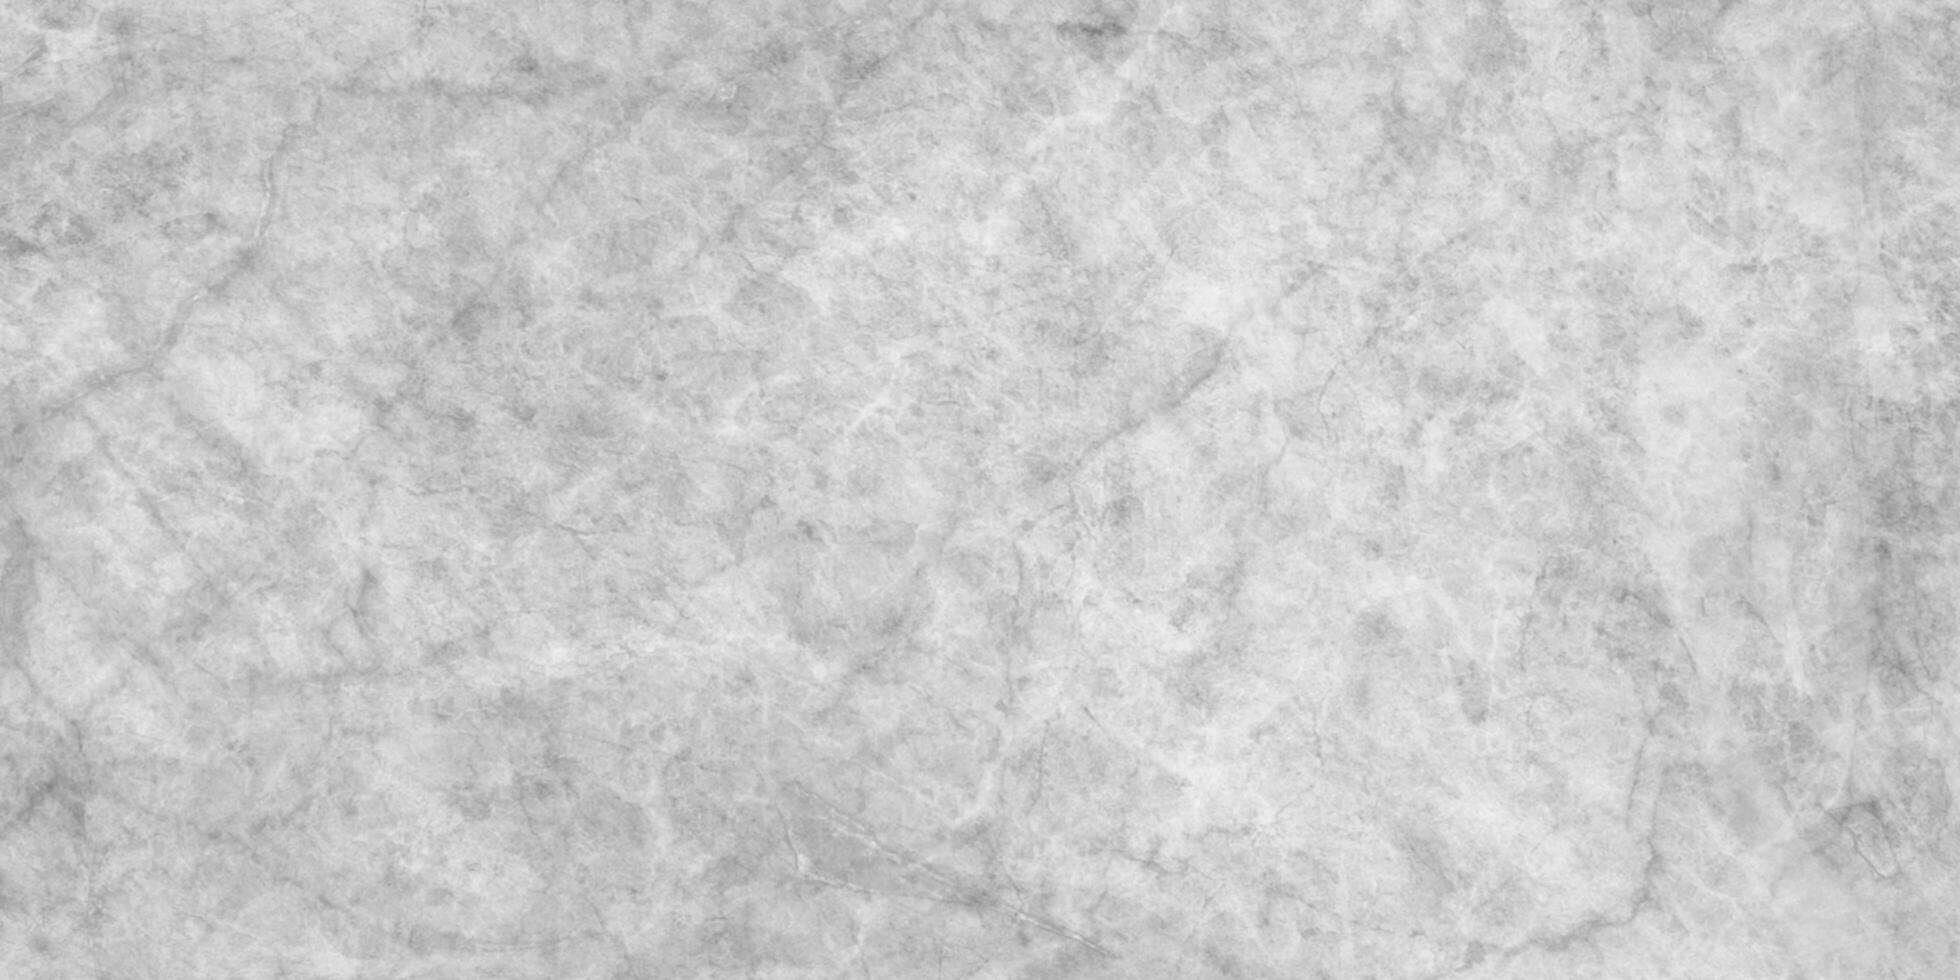 antiguo y grunge mármol Roca textura, resumen gris sombras grunge textura, pulido mármol textura Perfecto para muro, cocina, piso y baño decoración. foto